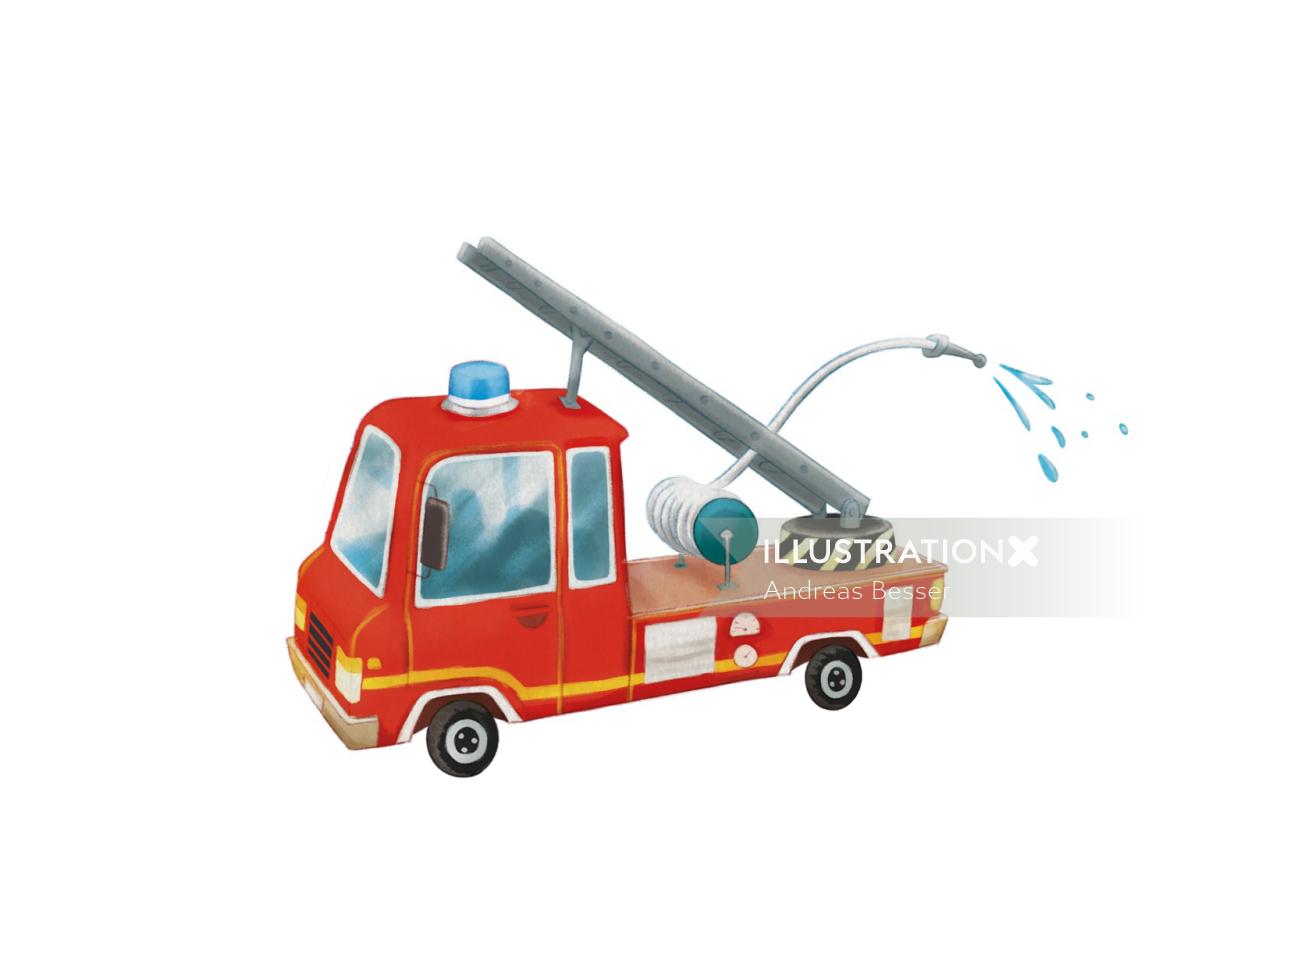 Illustration design of fire engine
